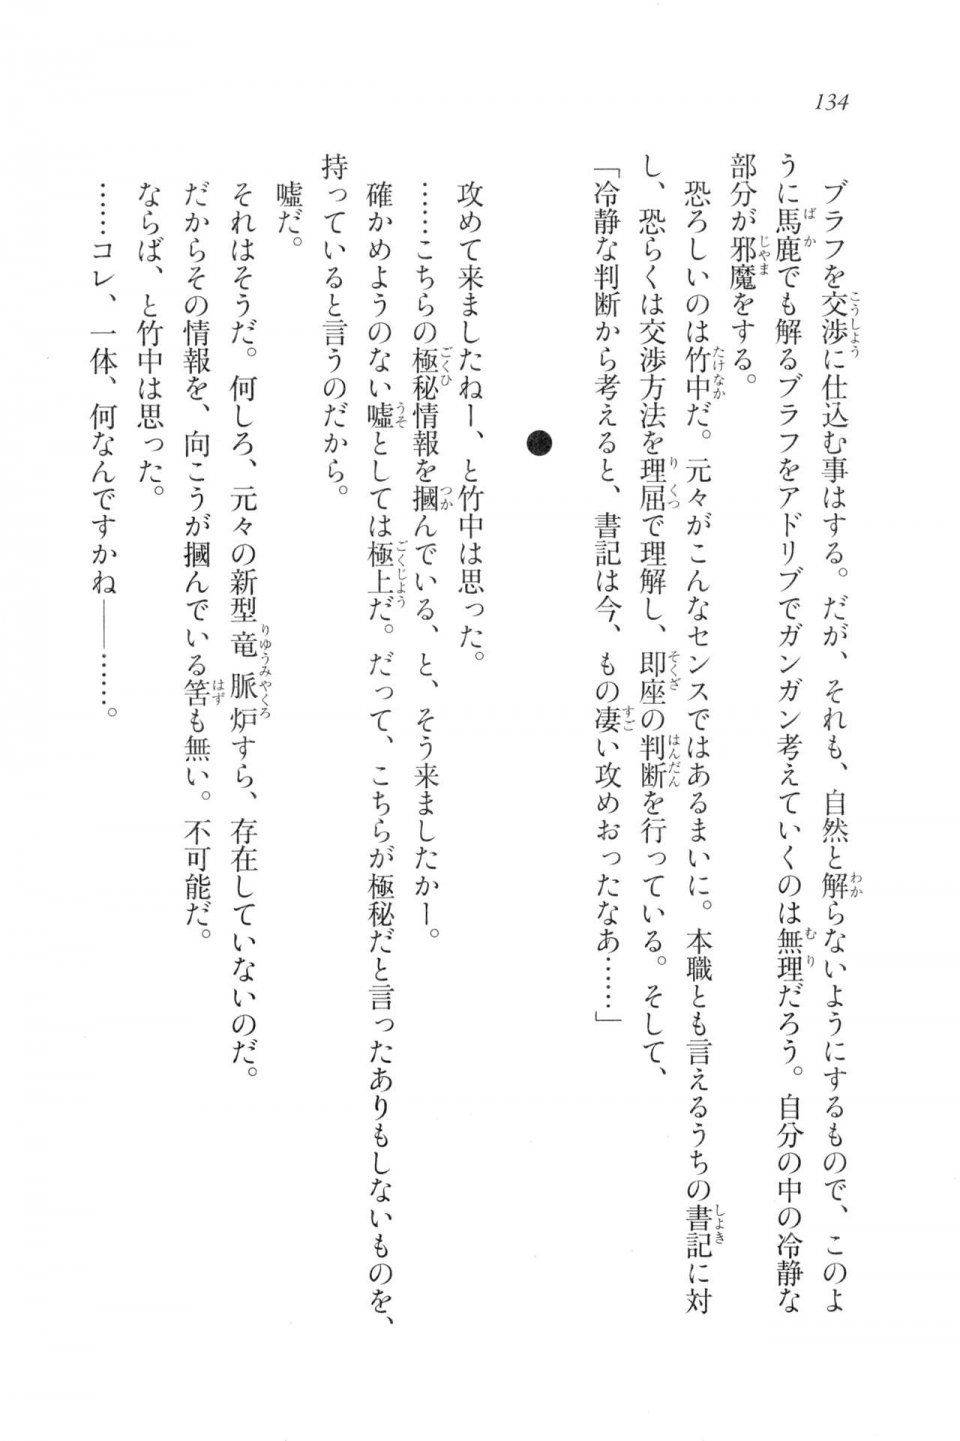 Kyoukai Senjou no Horizon LN Vol 20(8B) - Photo #134